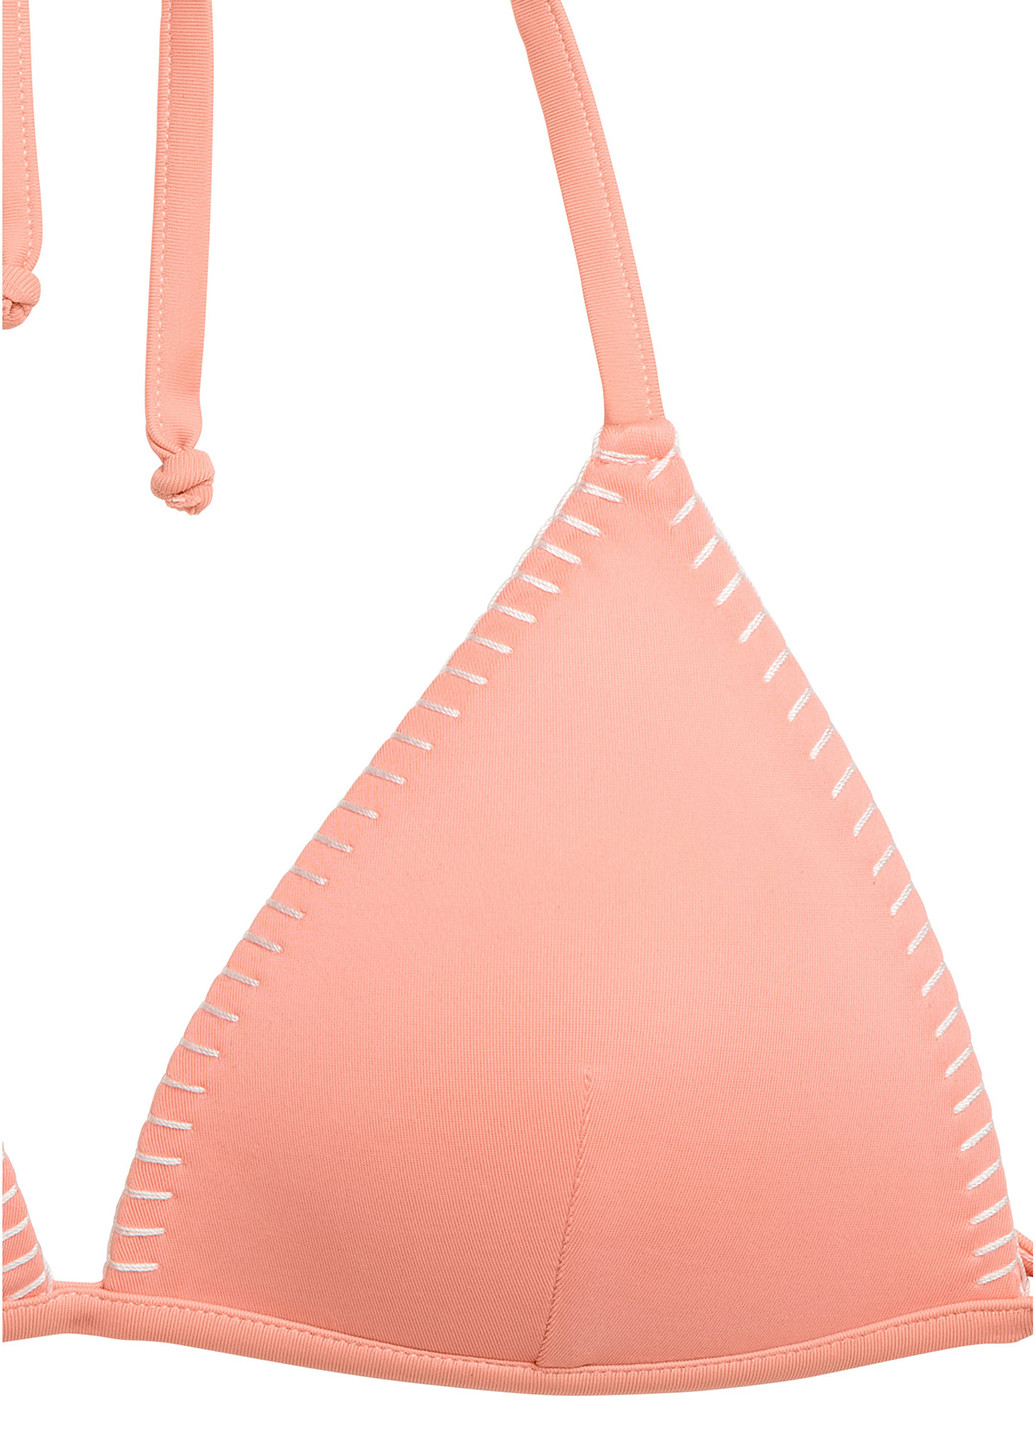 Купальный лиф H&M бикини однотонный персиковый пляжный полиэстер, трикотаж